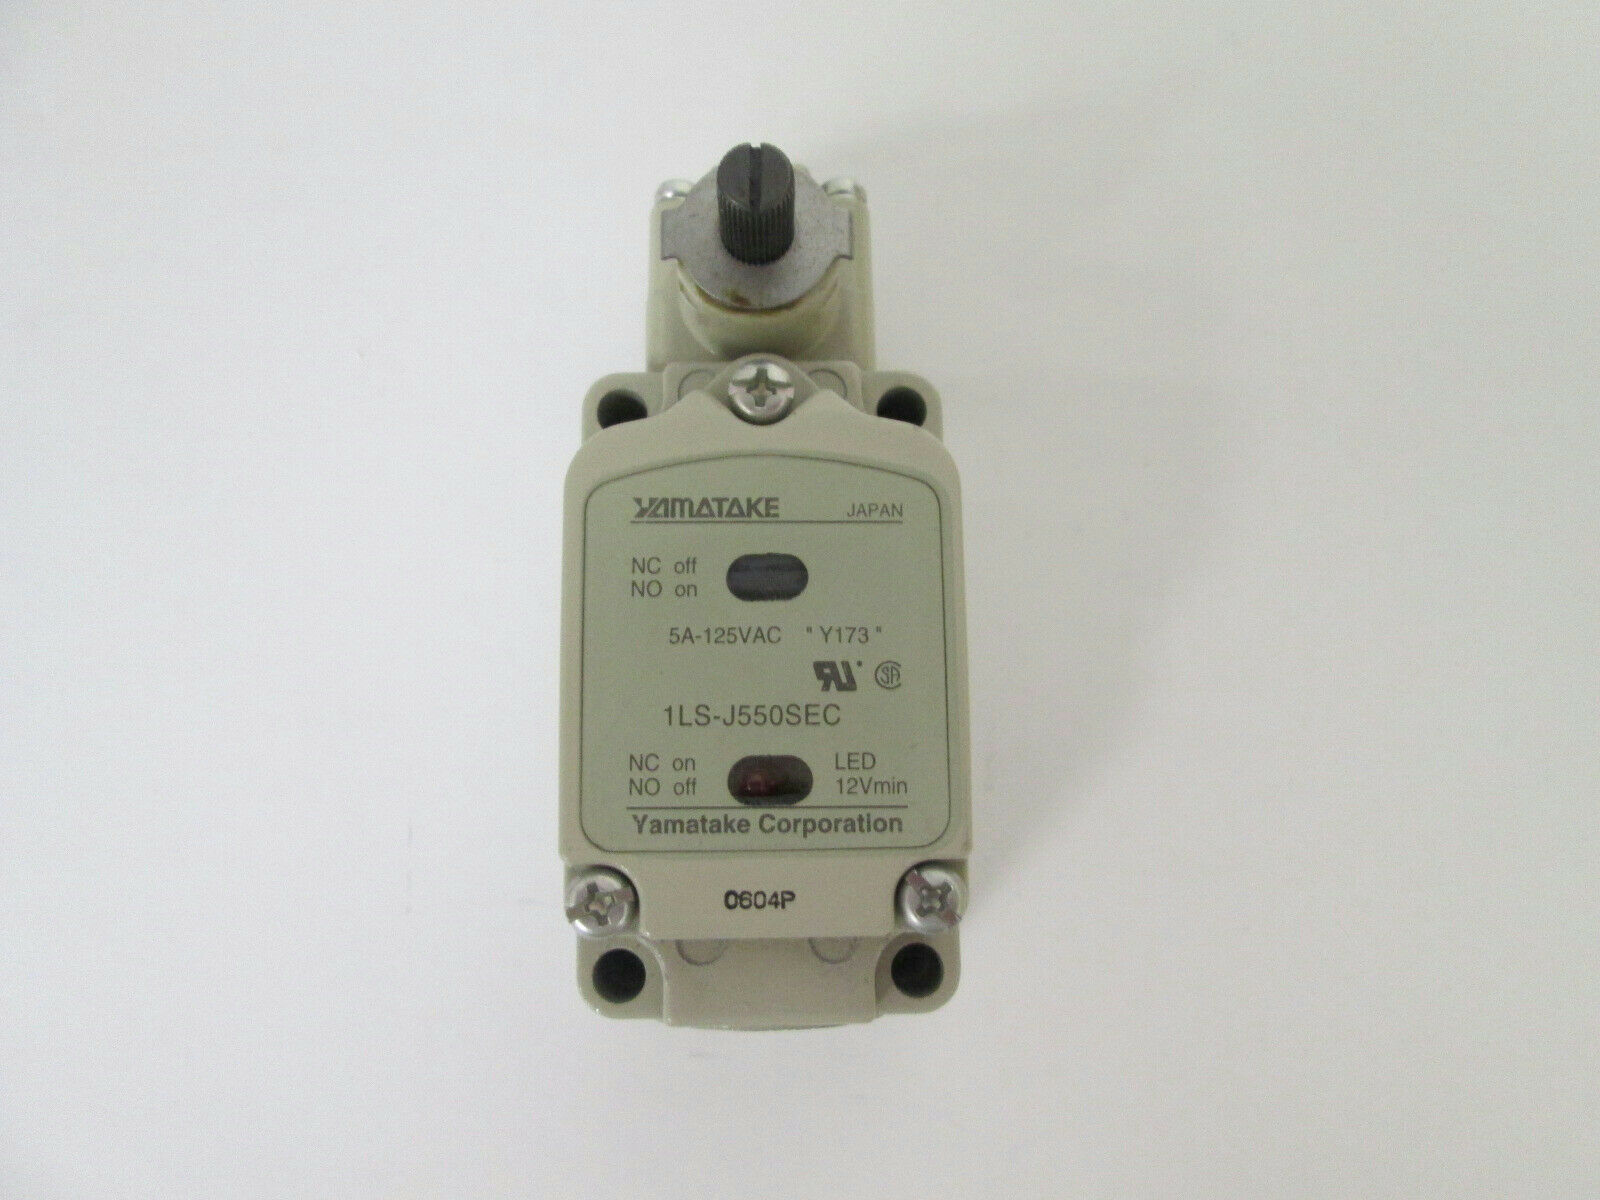 Yamatake Corporation 1LS-J550SEC General Purpose Compact Limit Switch 125 VAC 5A - $25.59